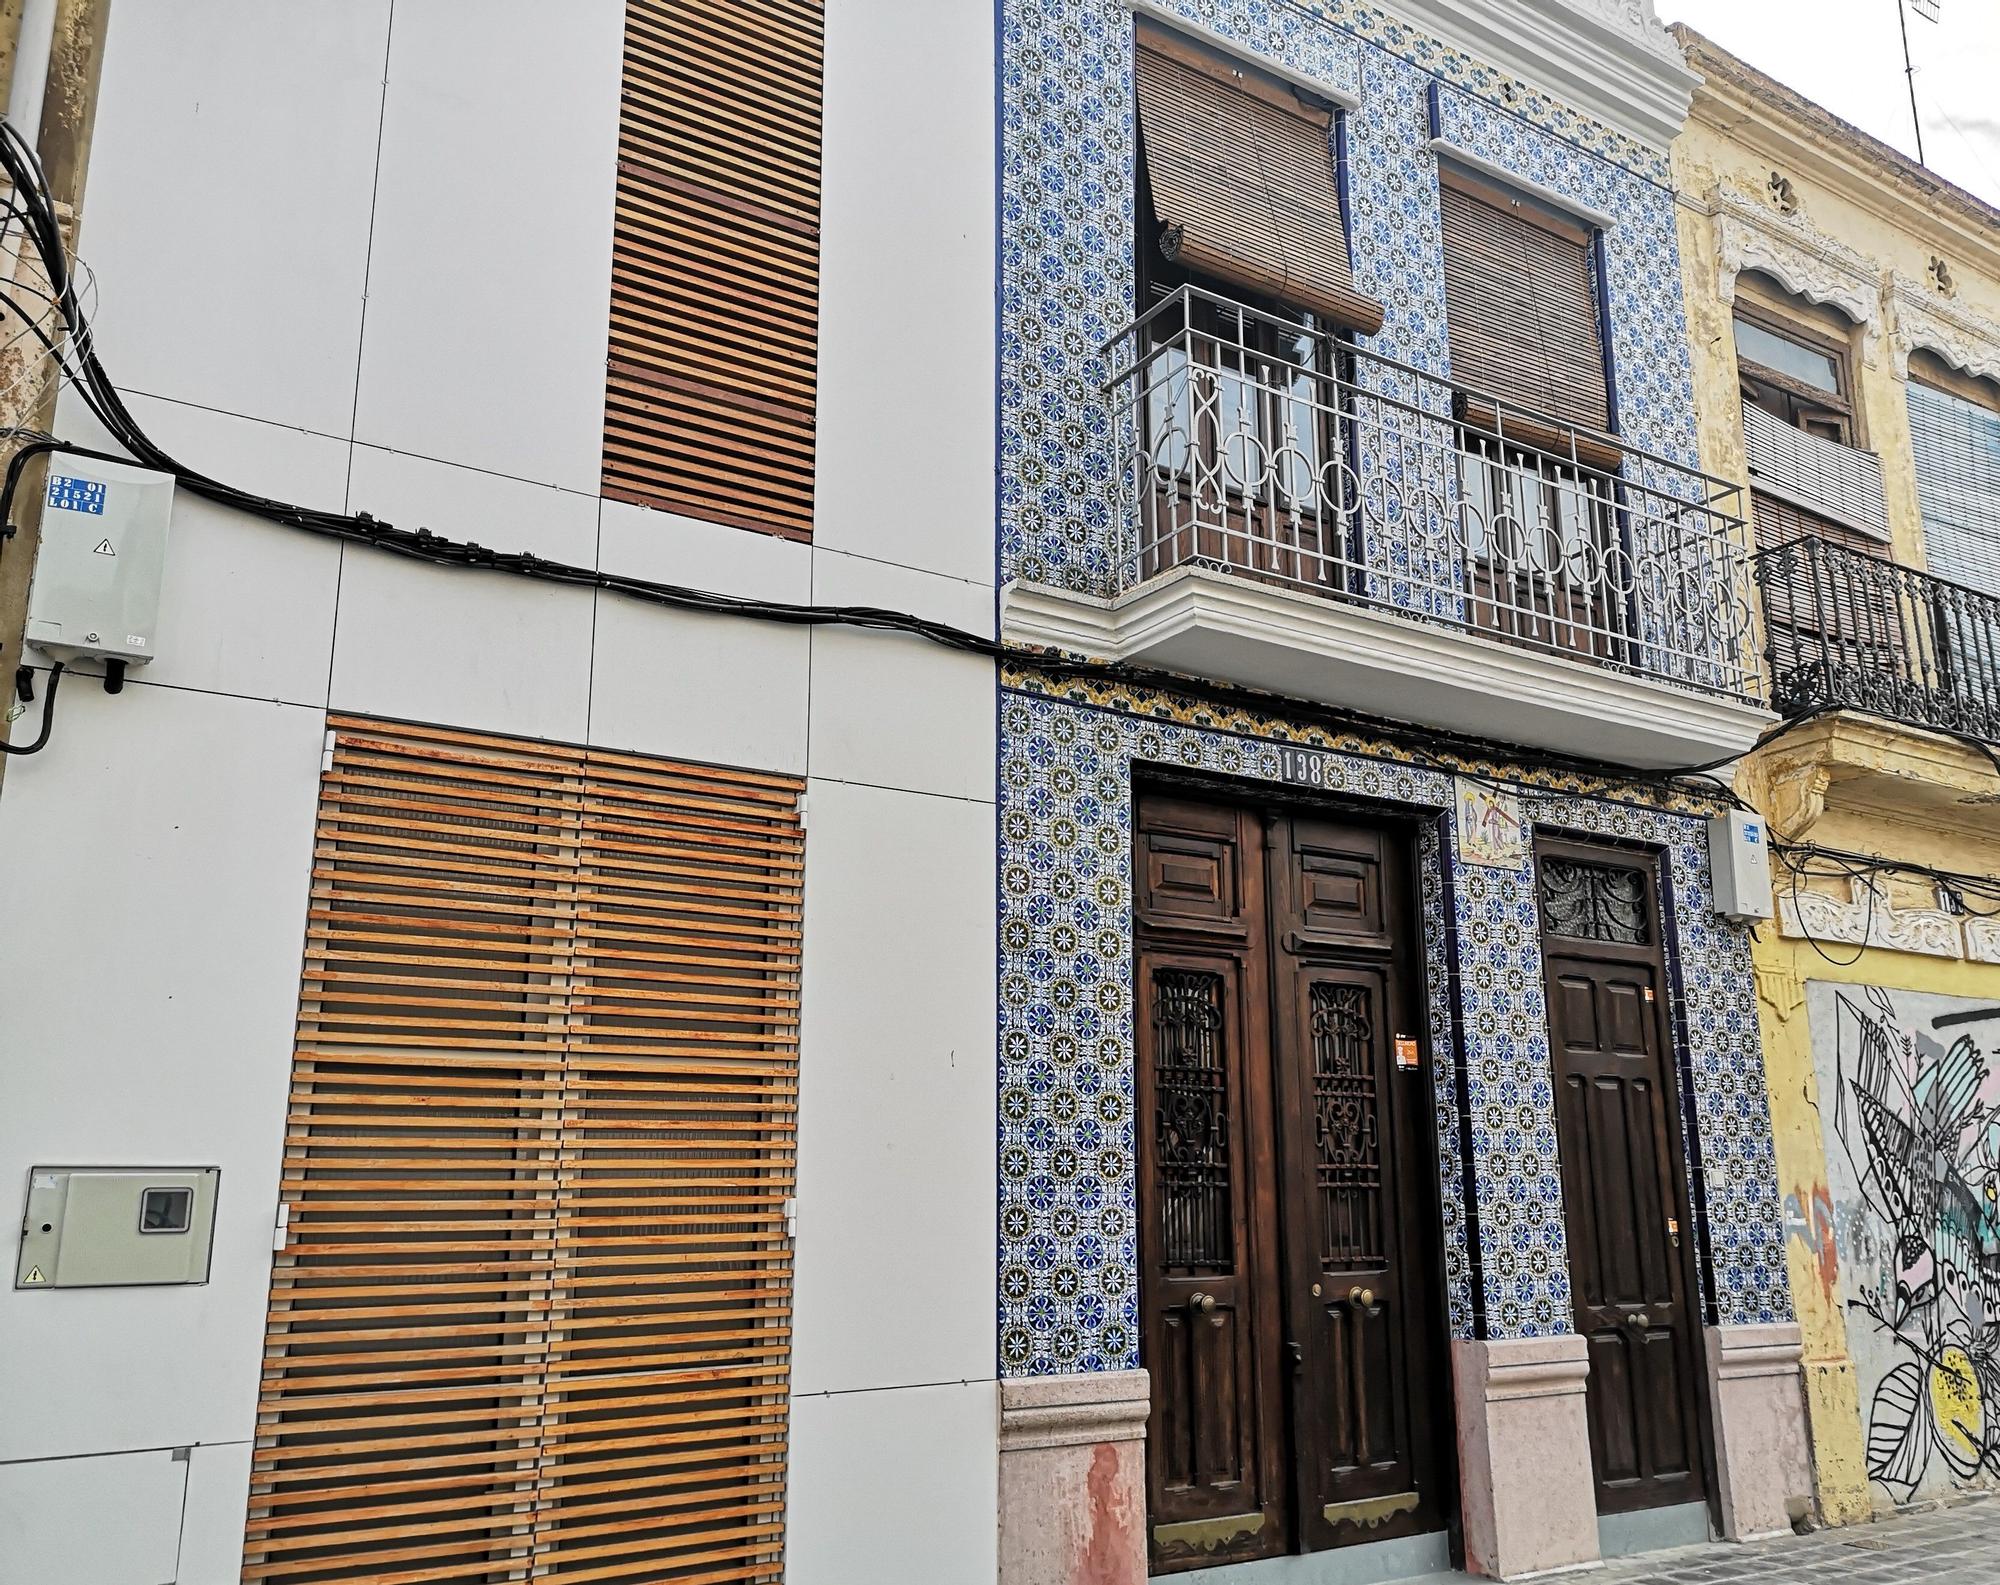 La curiosa vivienda antigua y moderna de la calle Barraca